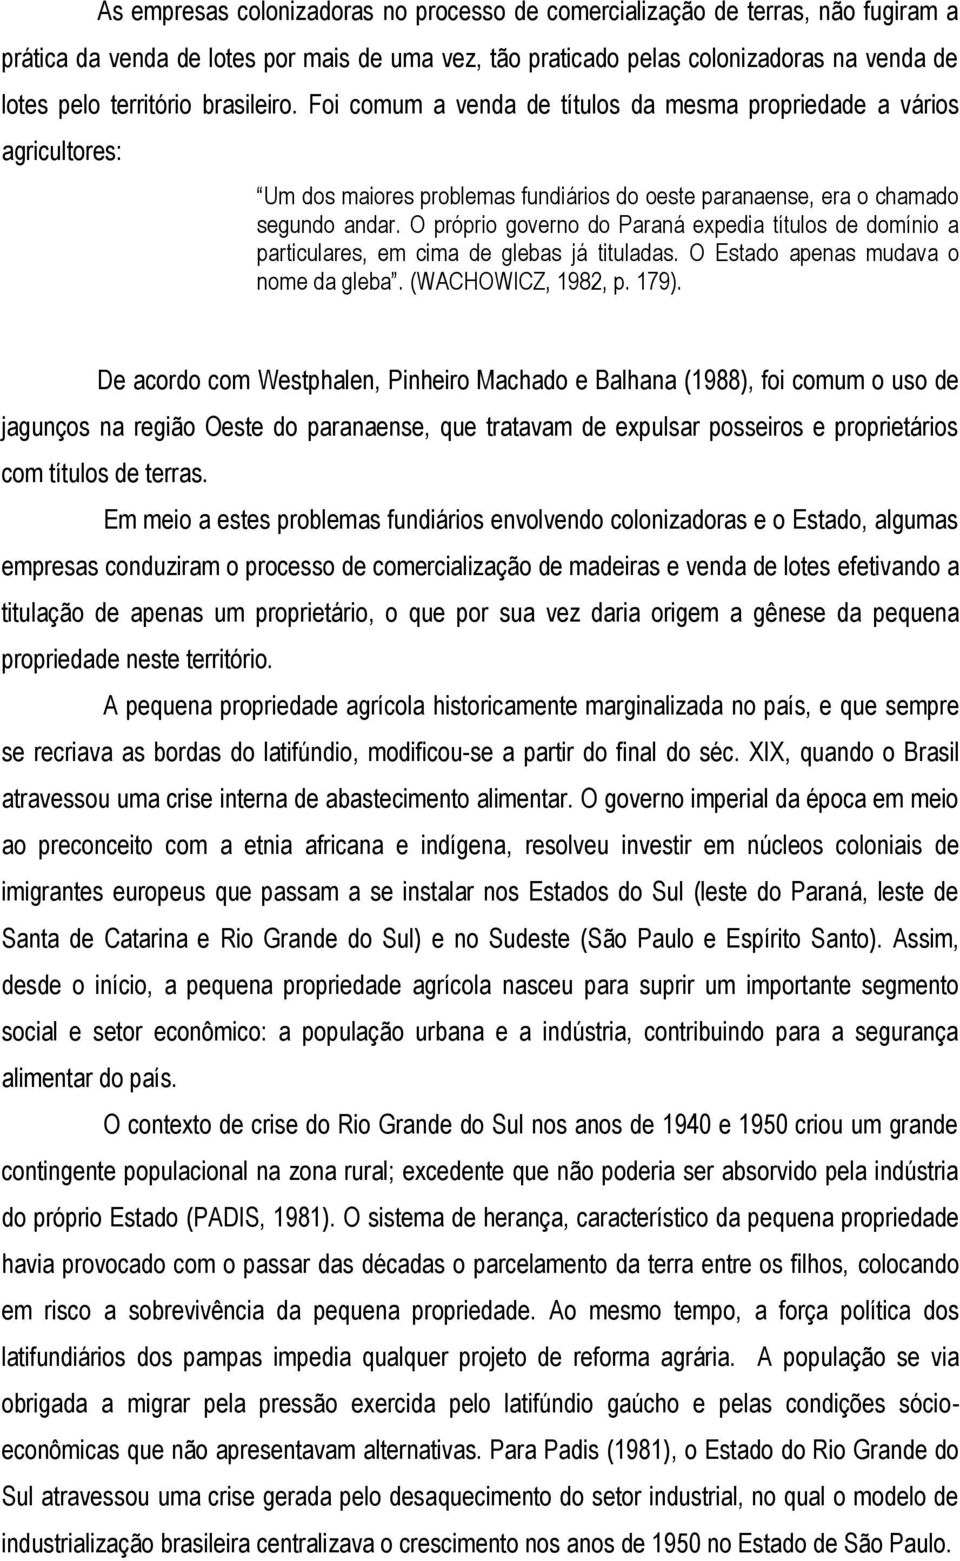 O próprio governo do Paraná expedia títulos de domínio a particulares, em cima de glebas já tituladas. O Estado apenas mudava o nome da gleba. (WACHOWICZ, 1982, p. 179).